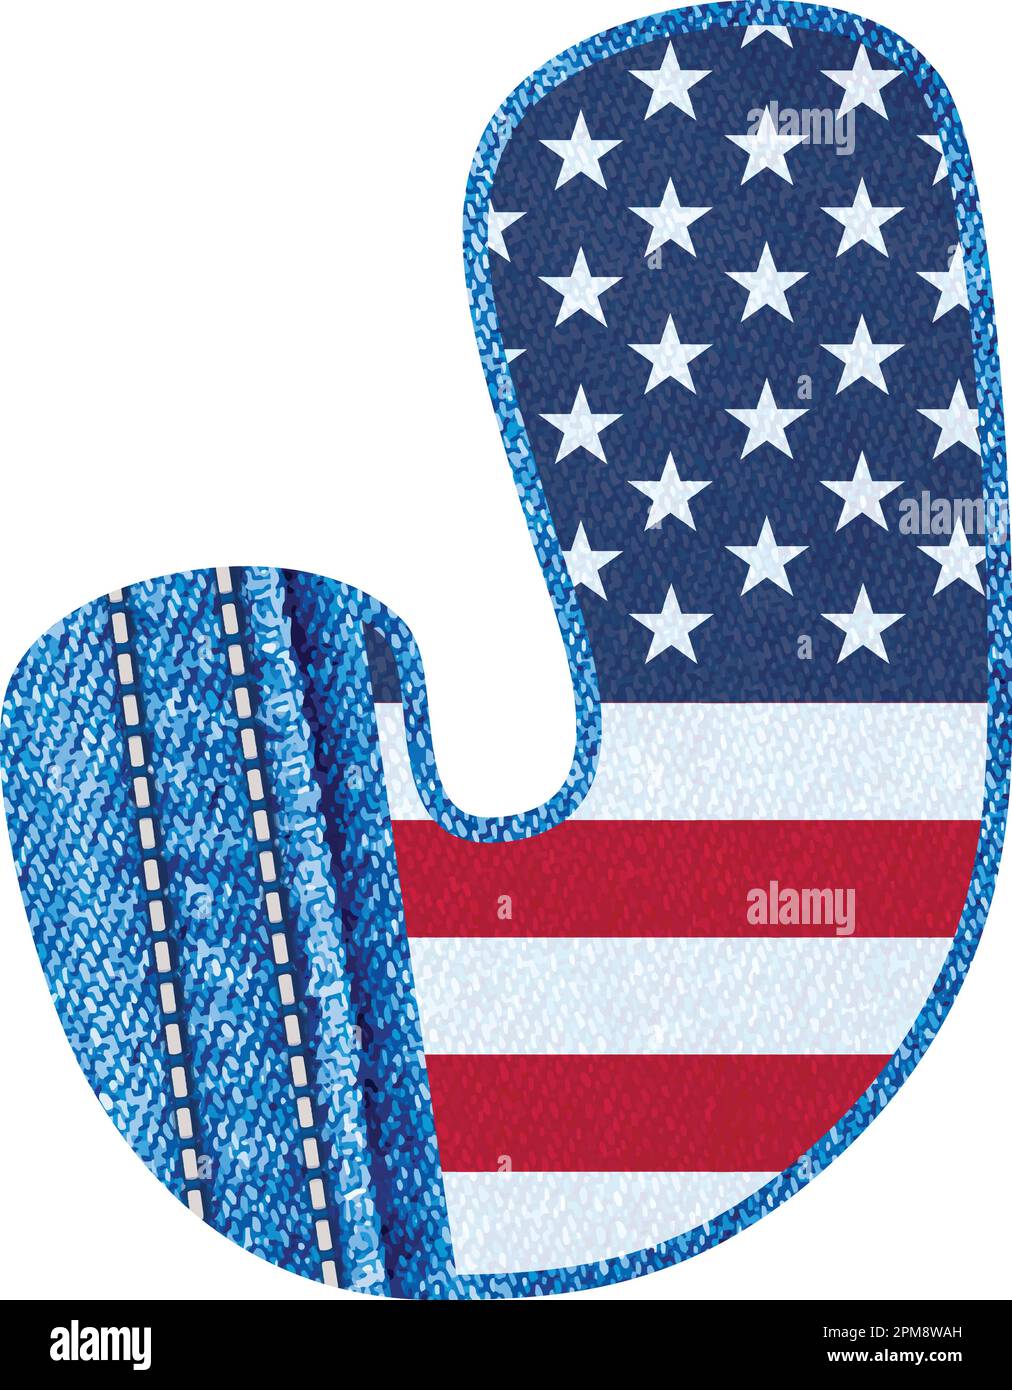 La lettera J con la texture di tessuto denim blu e bandiera USA - vettore iniziale J font con tessuto jean e bandiera americana - jean fabric english alphab Illustrazione Vettoriale